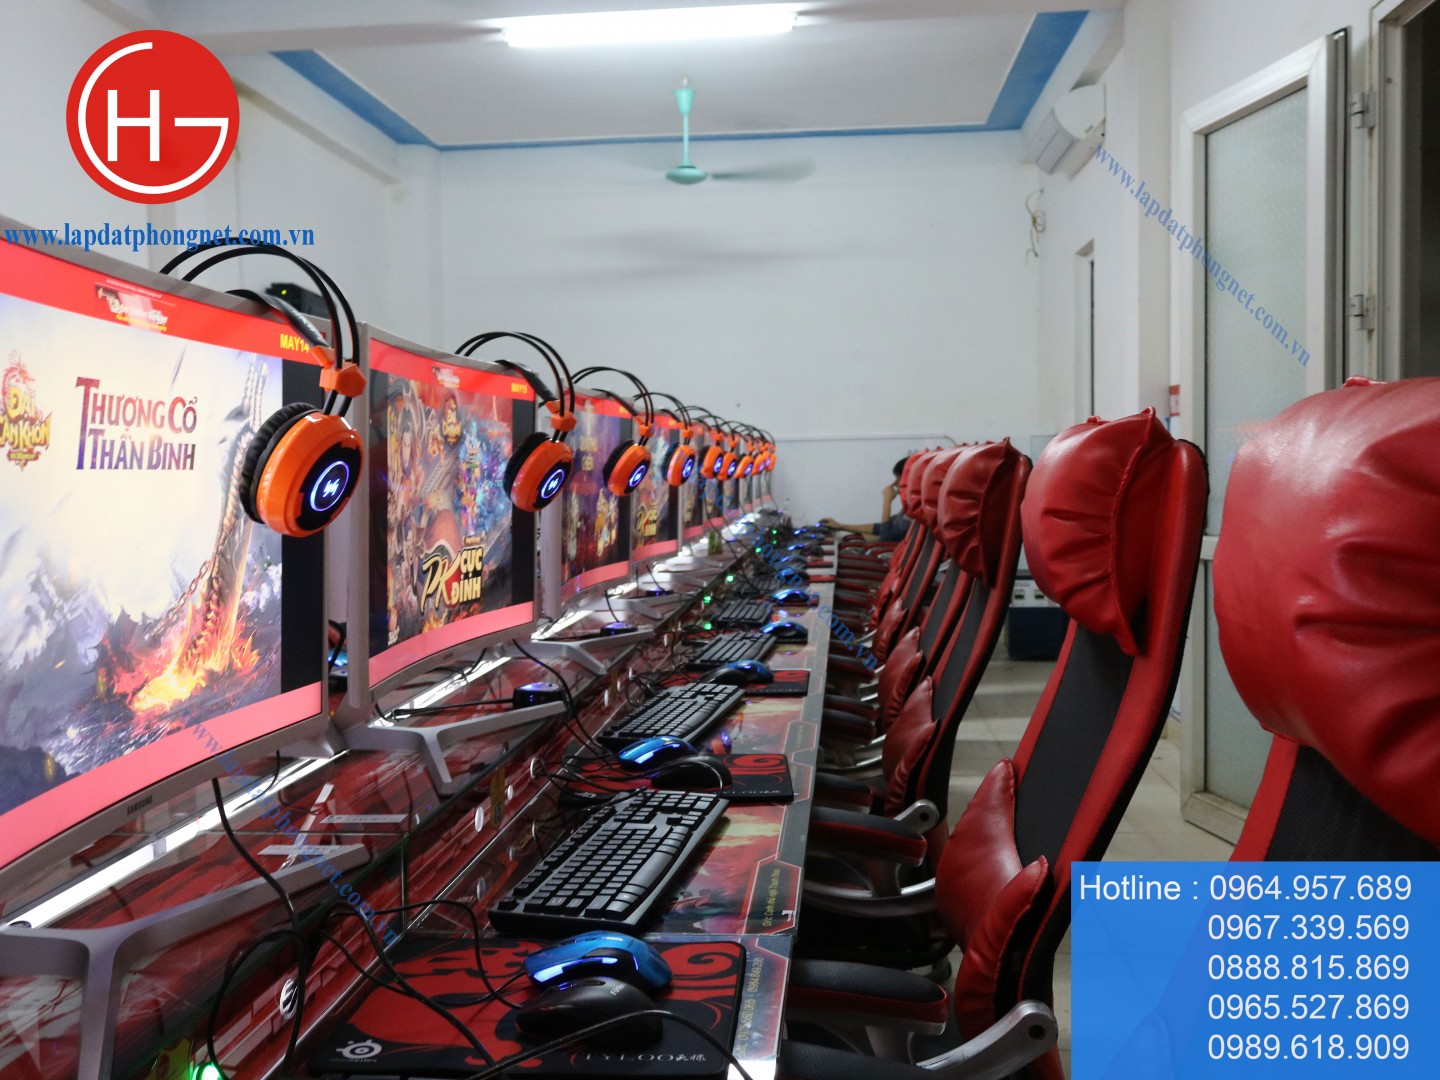 Lắp đặt phòng game giá rẻ cho anh Cường tại Phổ Yên, Thái Nguyên